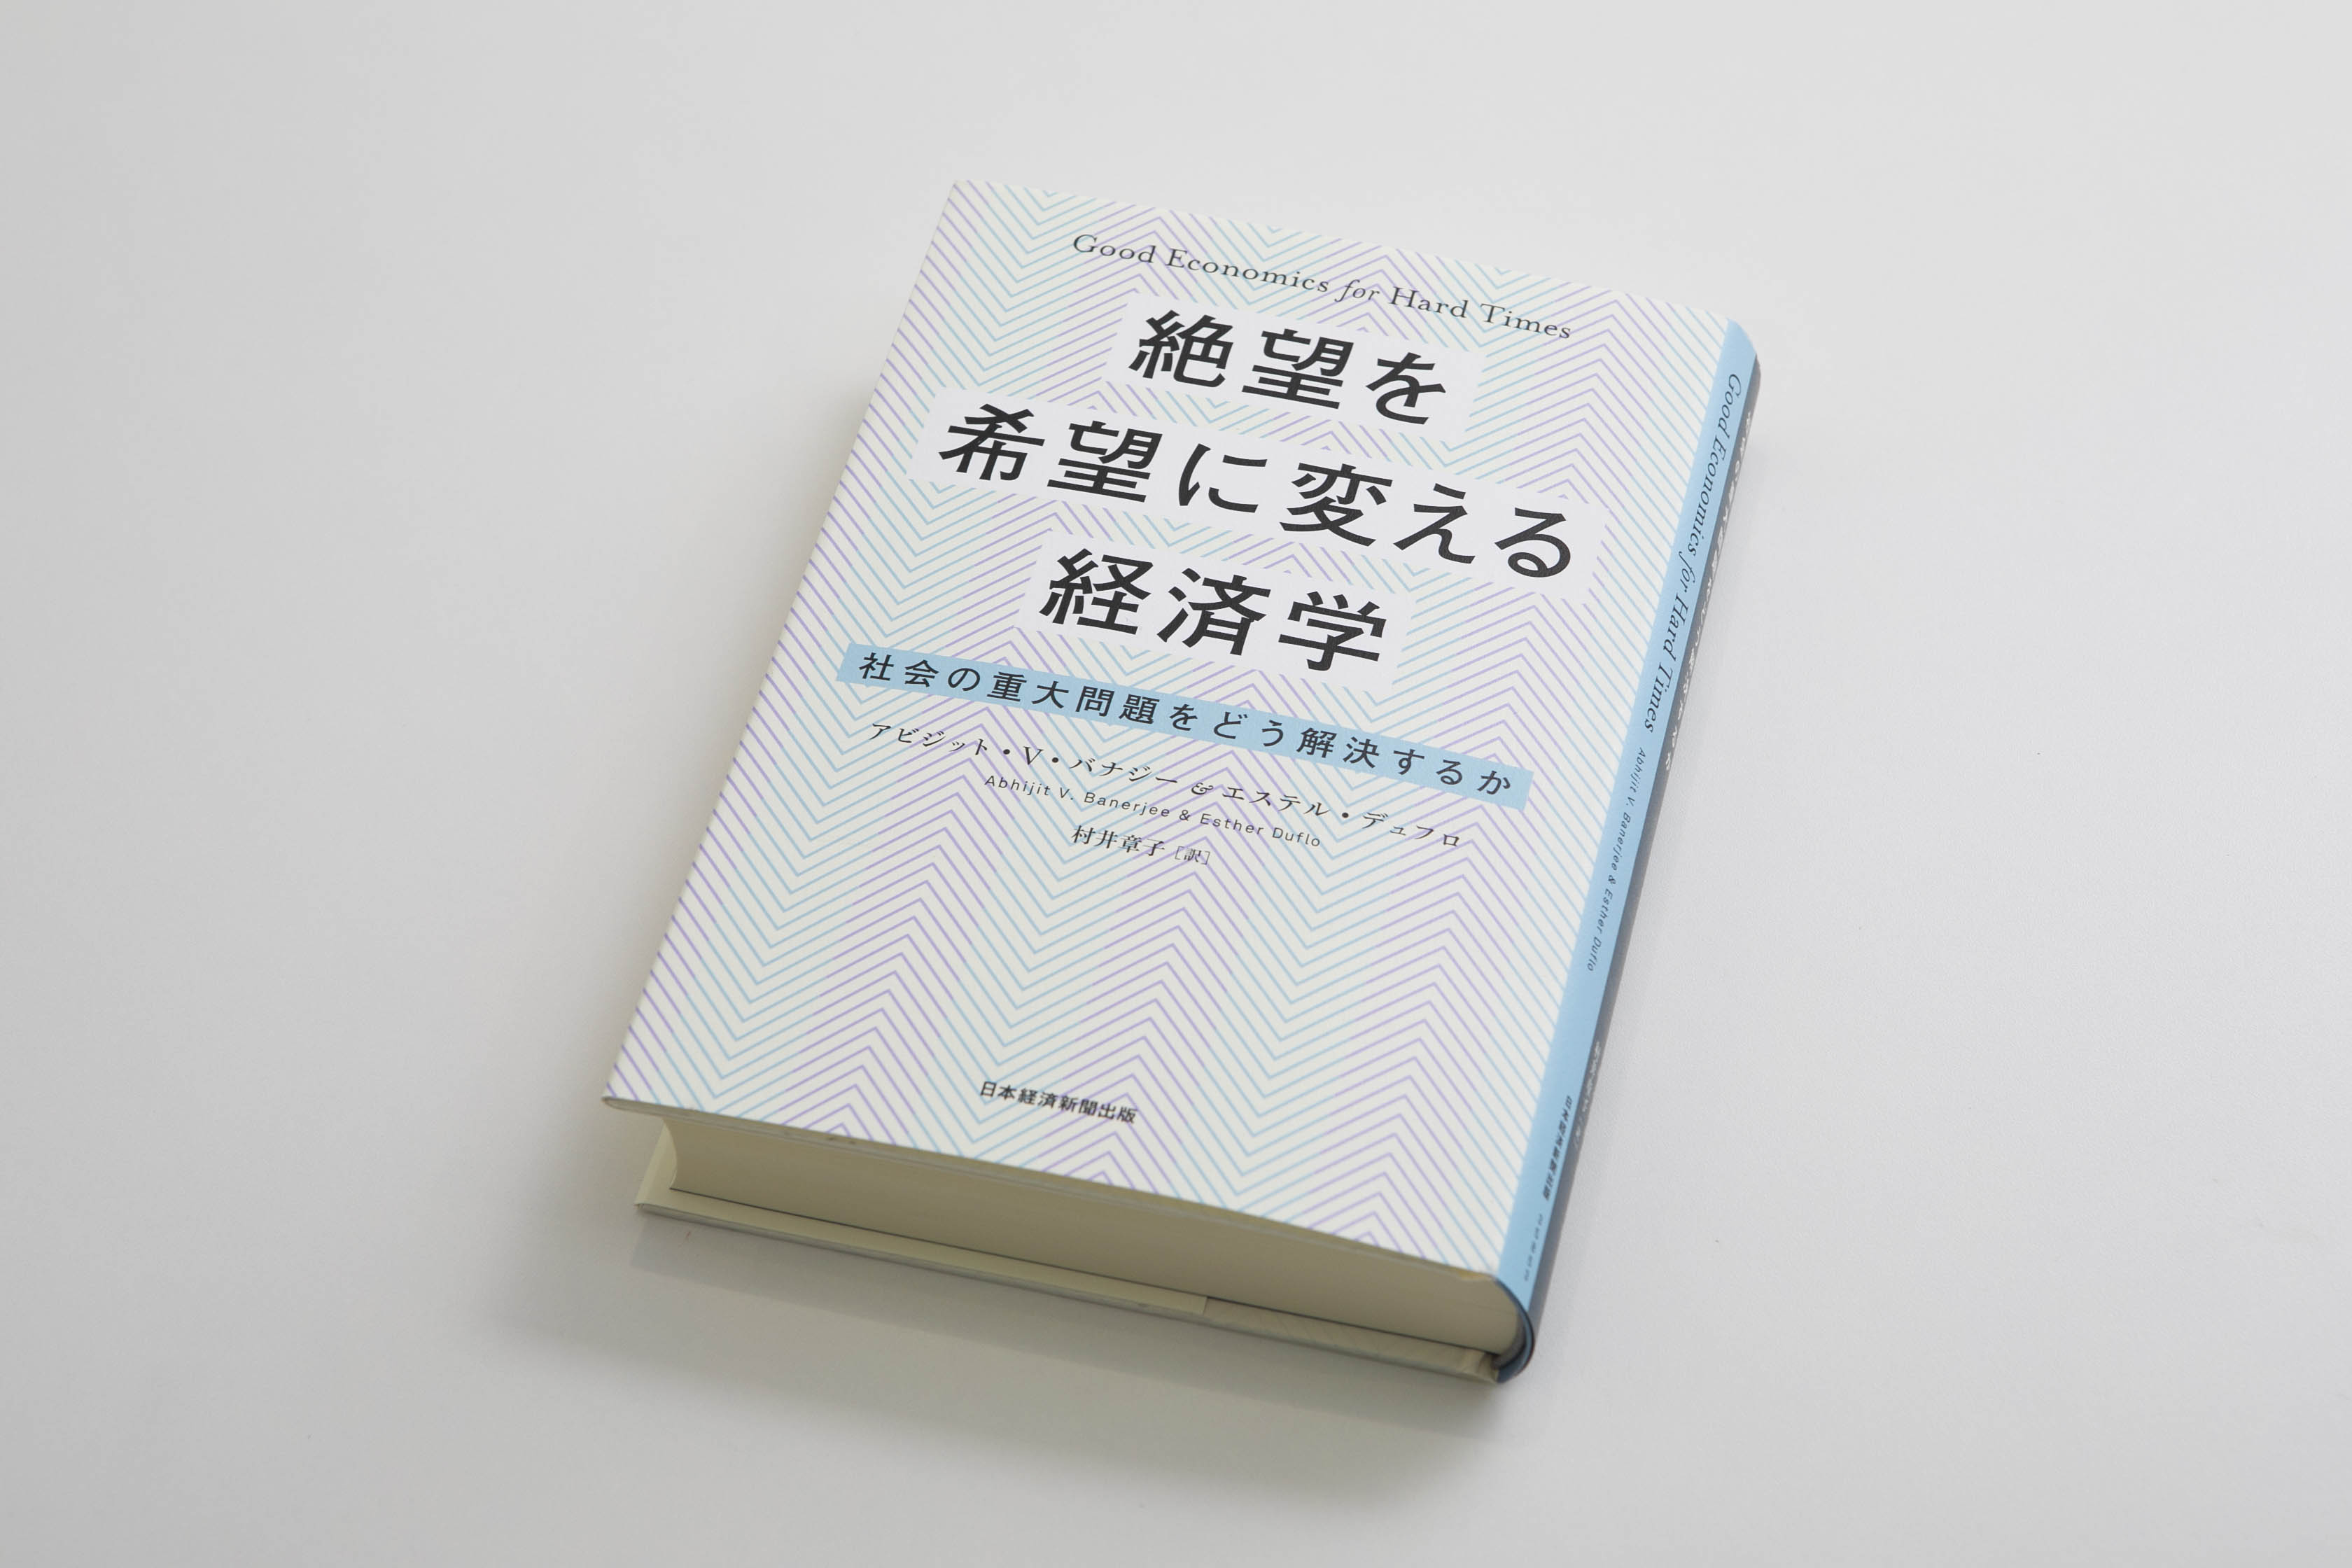 日本経済新聞「エコノミストが選ぶ経済図書ベスト10」第1位に選ばれた『絶望を希望に変える経済学』